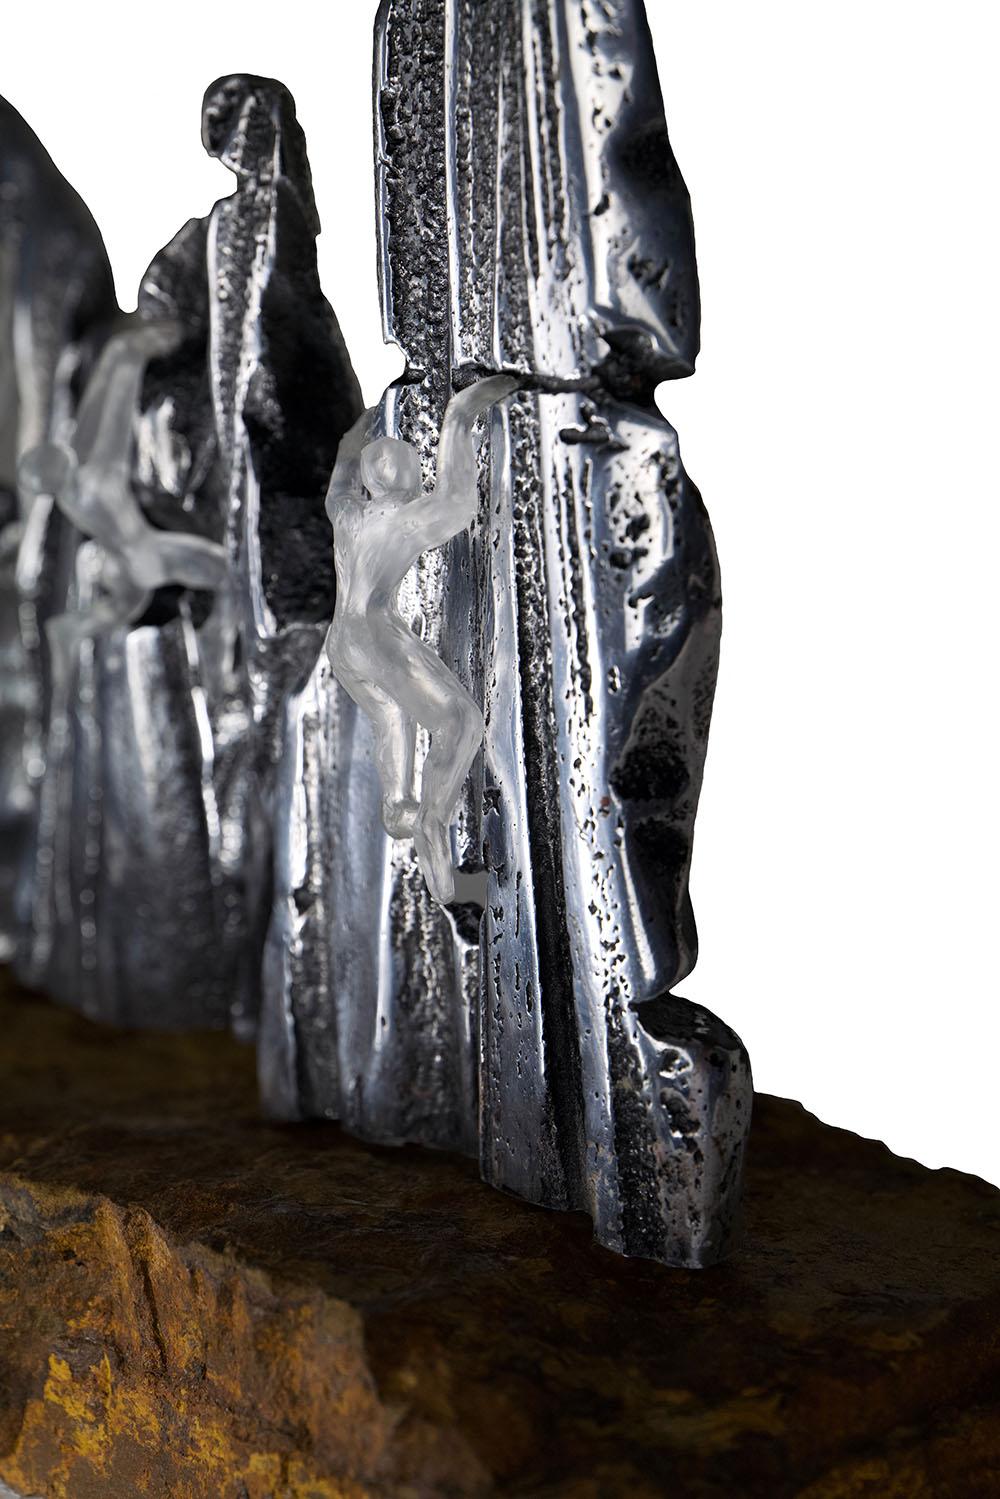  Hänge-Skulptur aus Glas und Metall mit natürlichem Steinsockel, Farbe Silber  – Sculpture von David Marshall